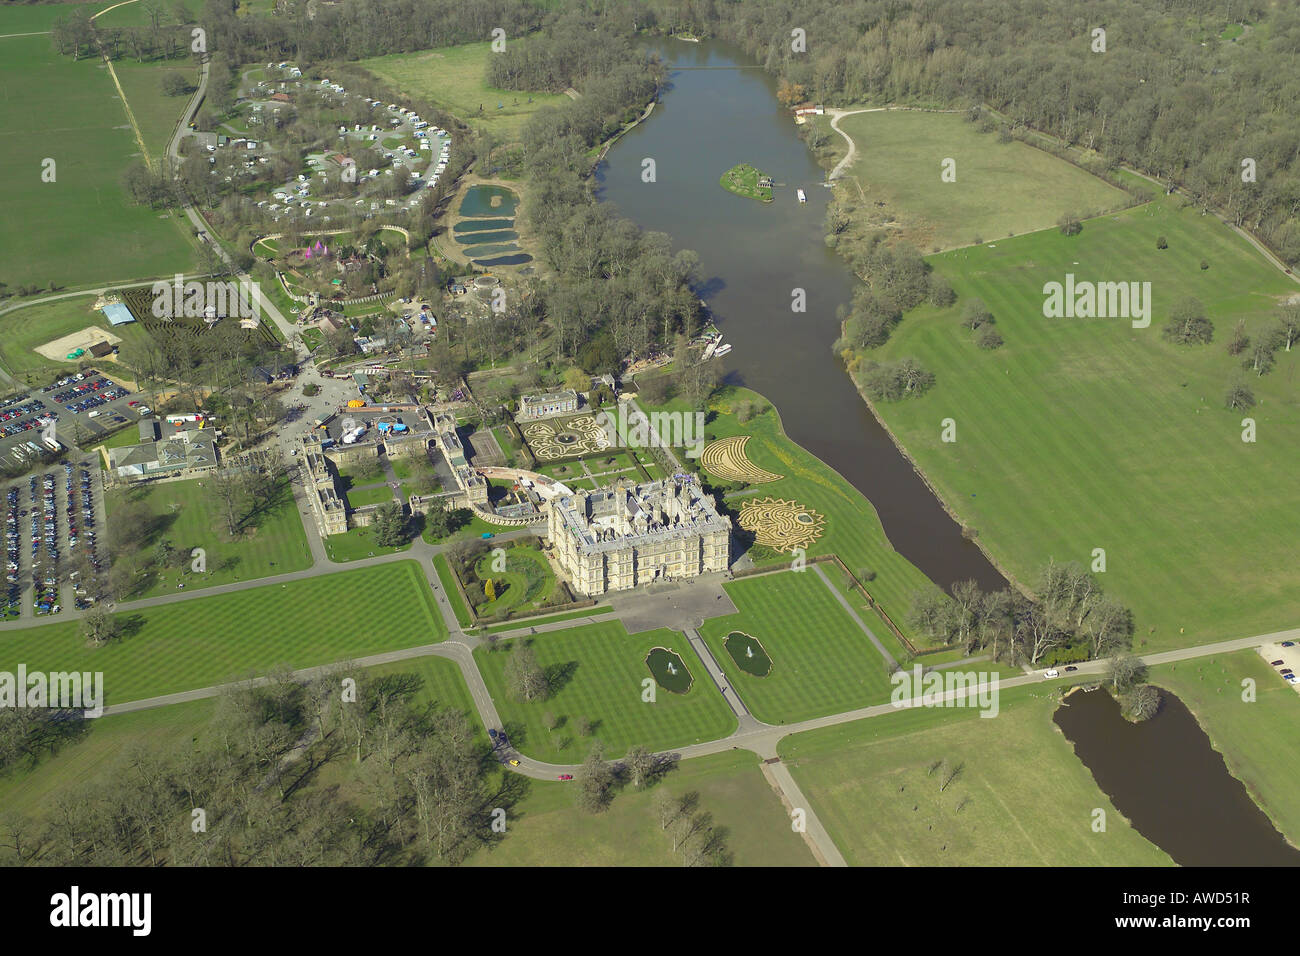 Vista aerea di Longleat House mostrato con i giardini formali e il lago. La dimora signorile è famosa per il suo parco di safari Foto Stock